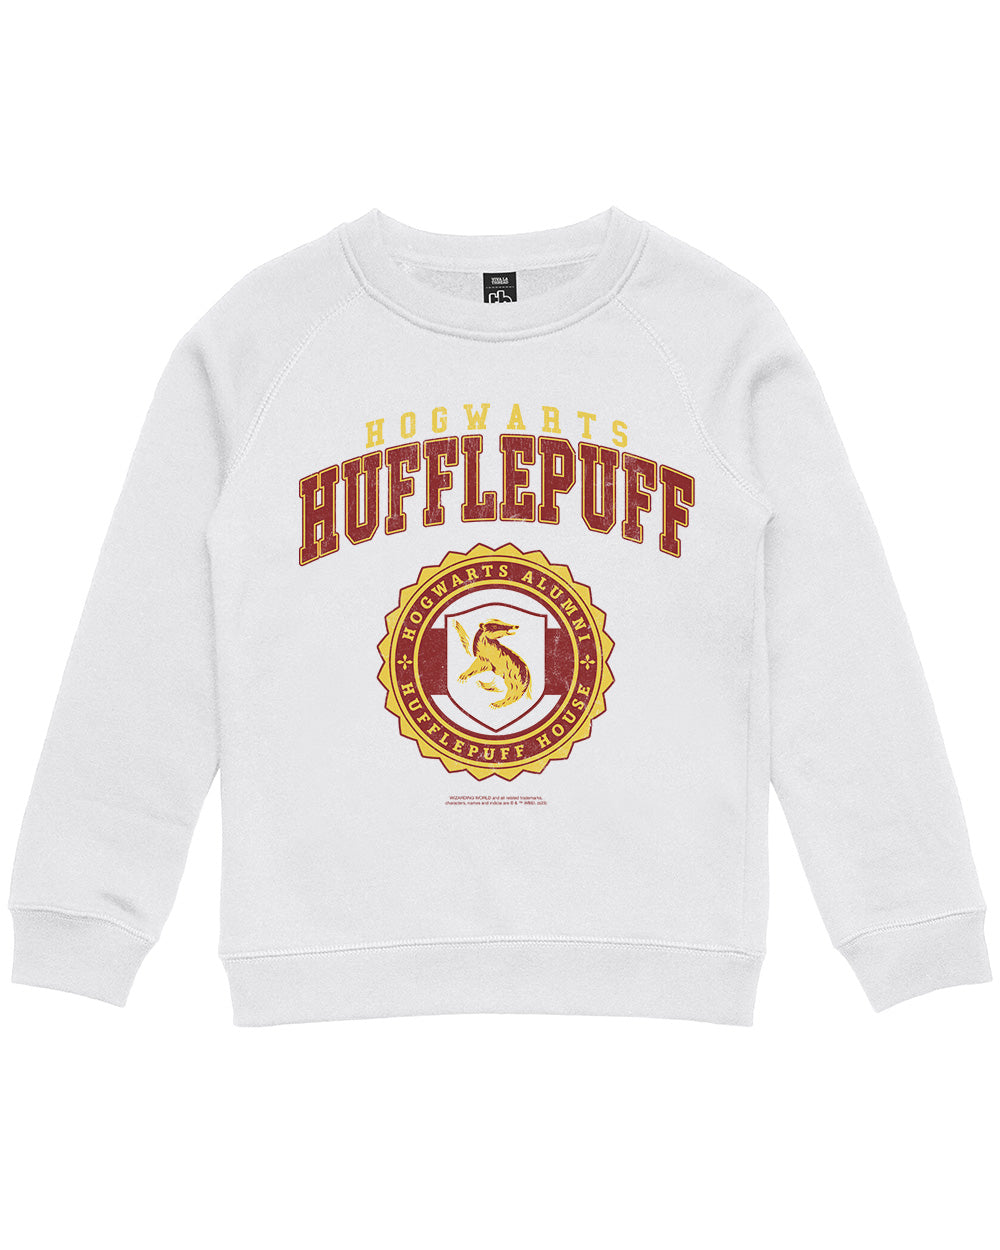 T-Shirt Merch Europe Hufflepuff College | Potter Threadheads Official Harry |